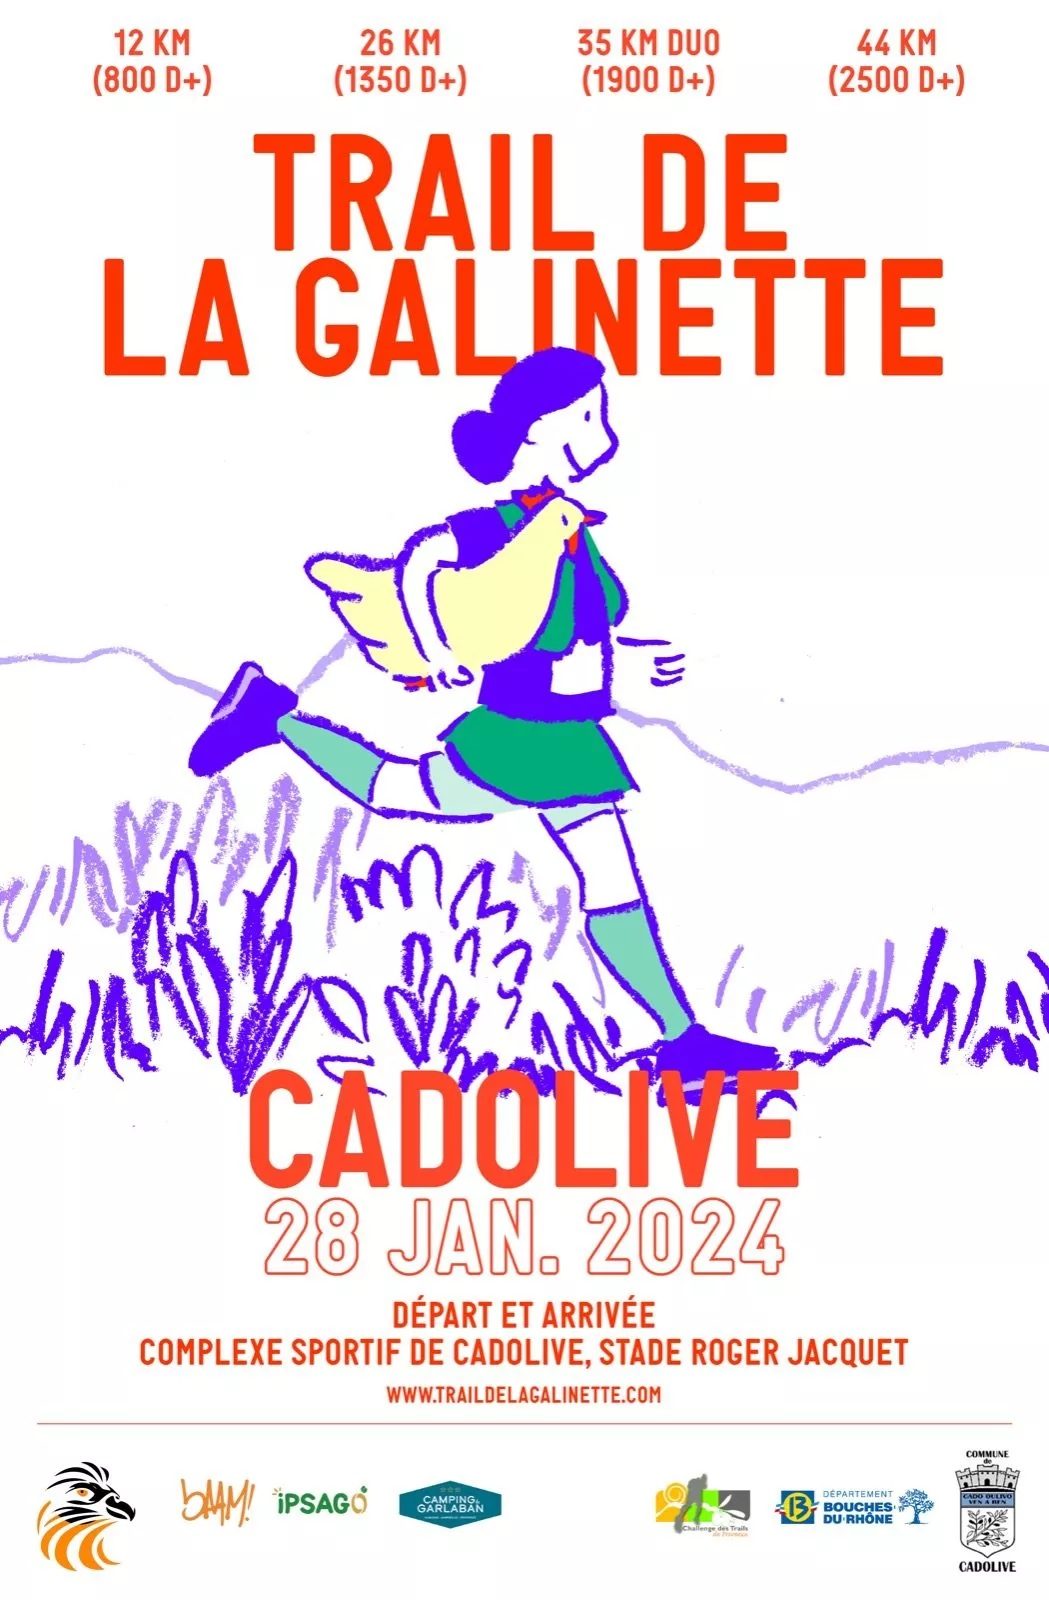 Ouverture du Challenge 2024 sur le Trail de la Galinette : présentation